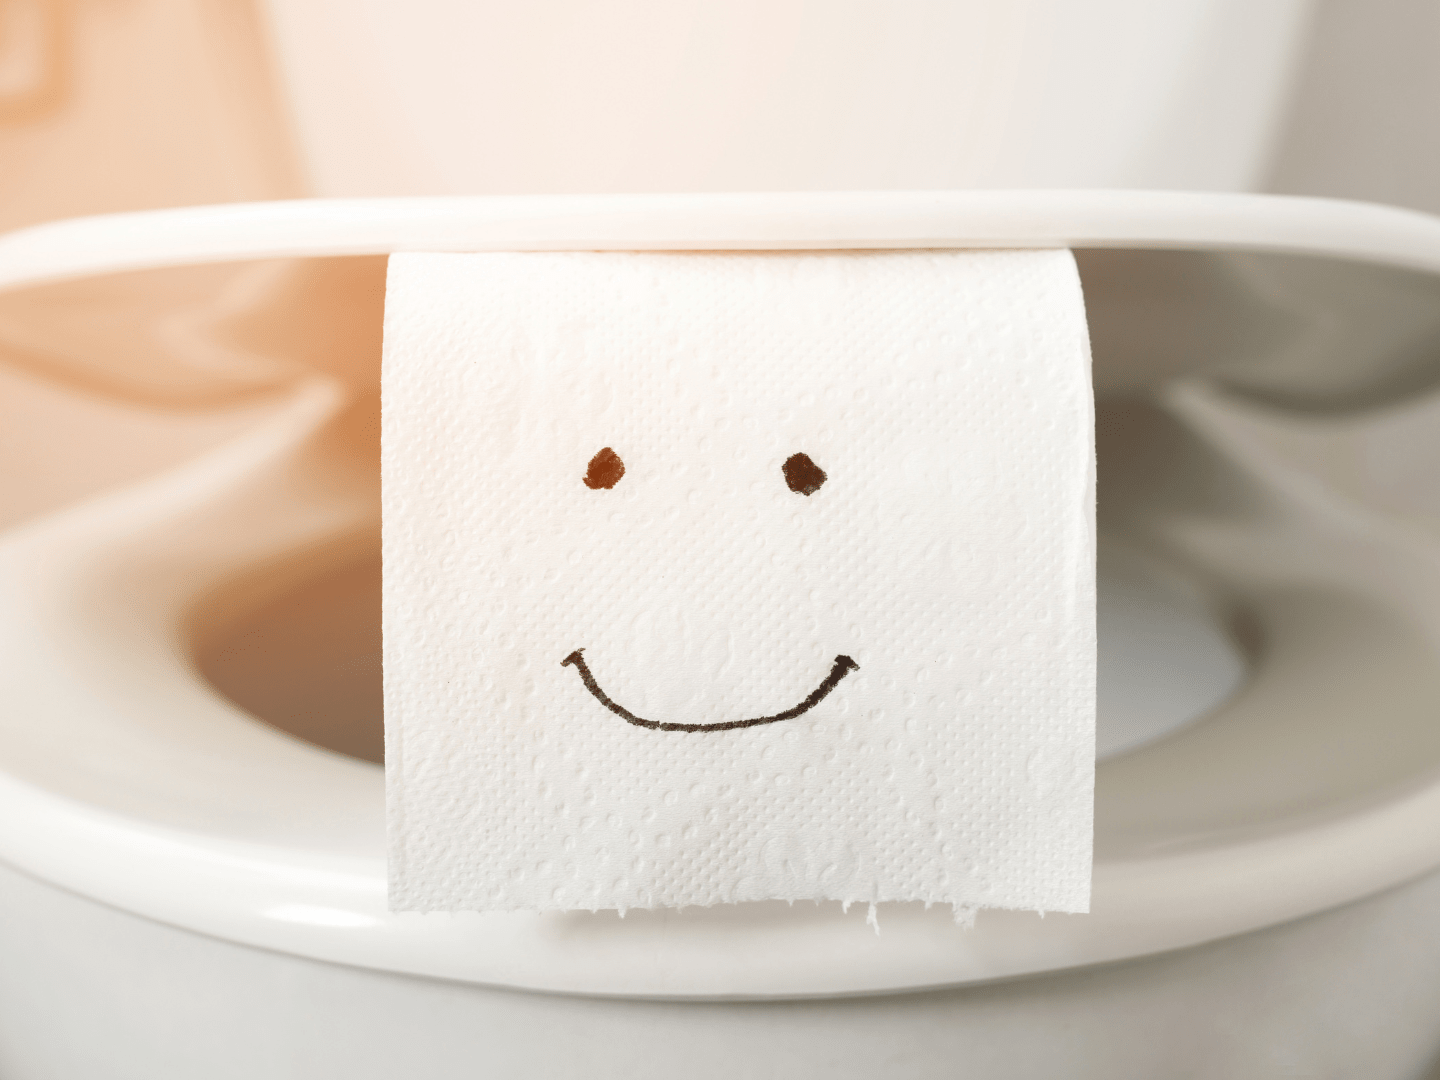 Urinstein entfernen: Tipps für eine saubere Toilette